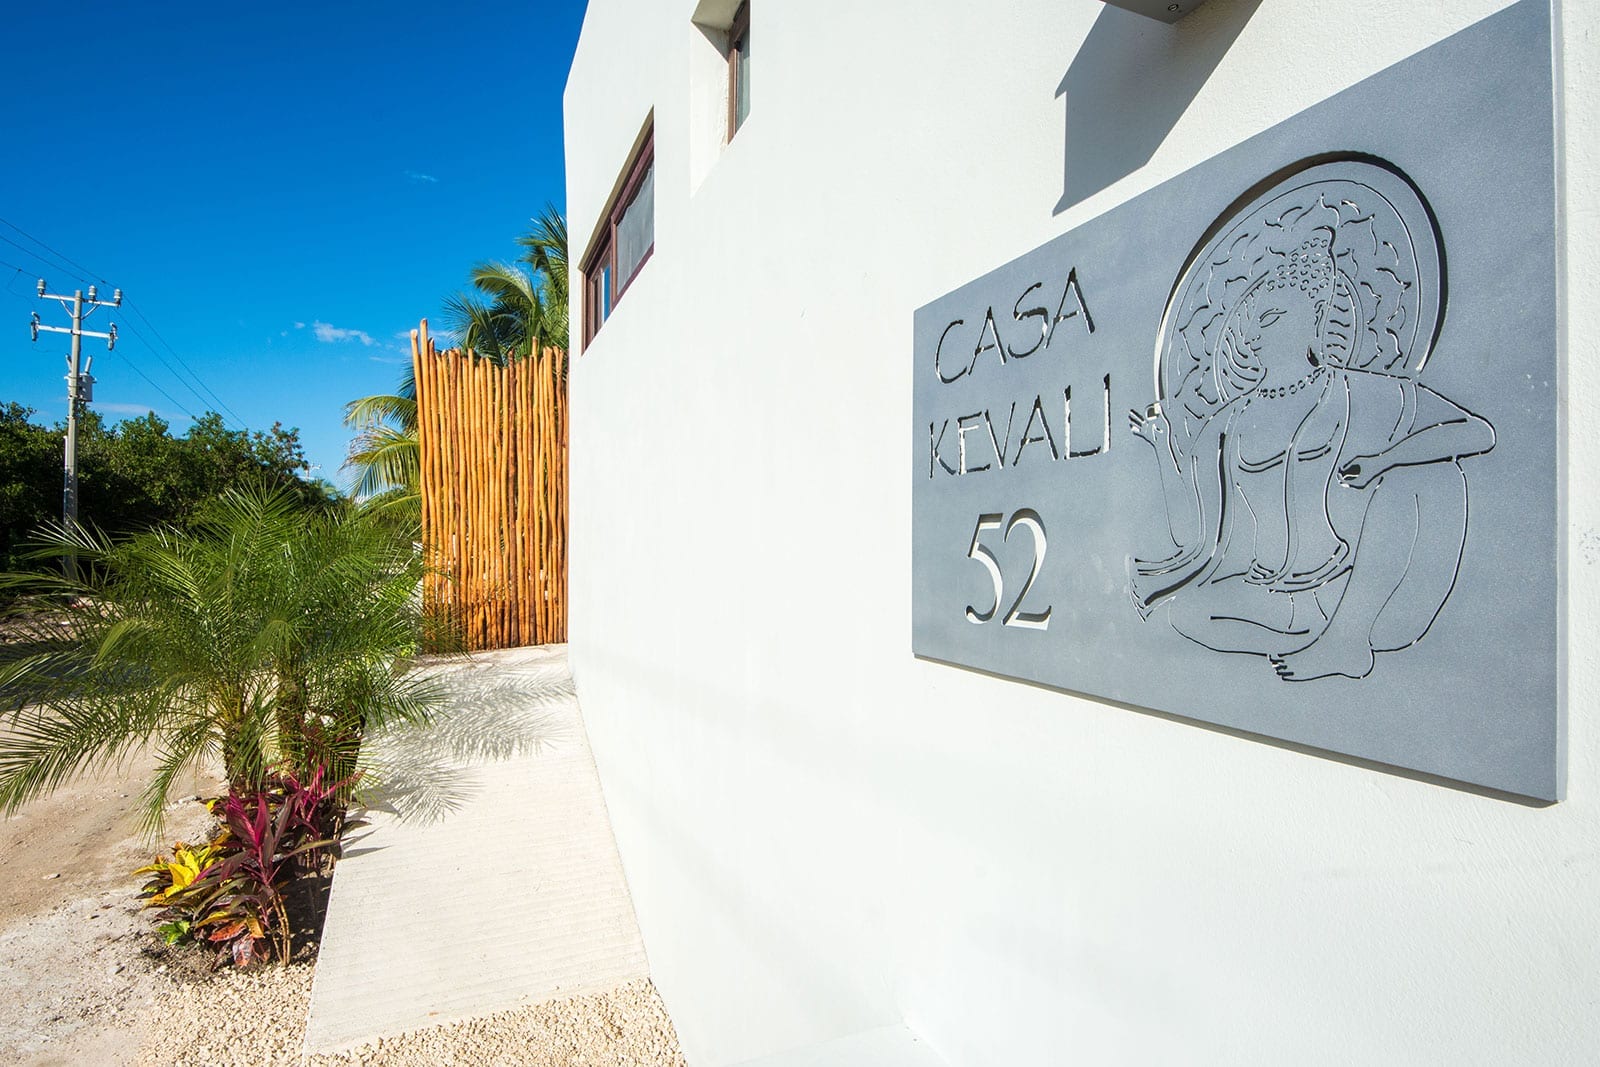 Casa Kevali Riviera Maya